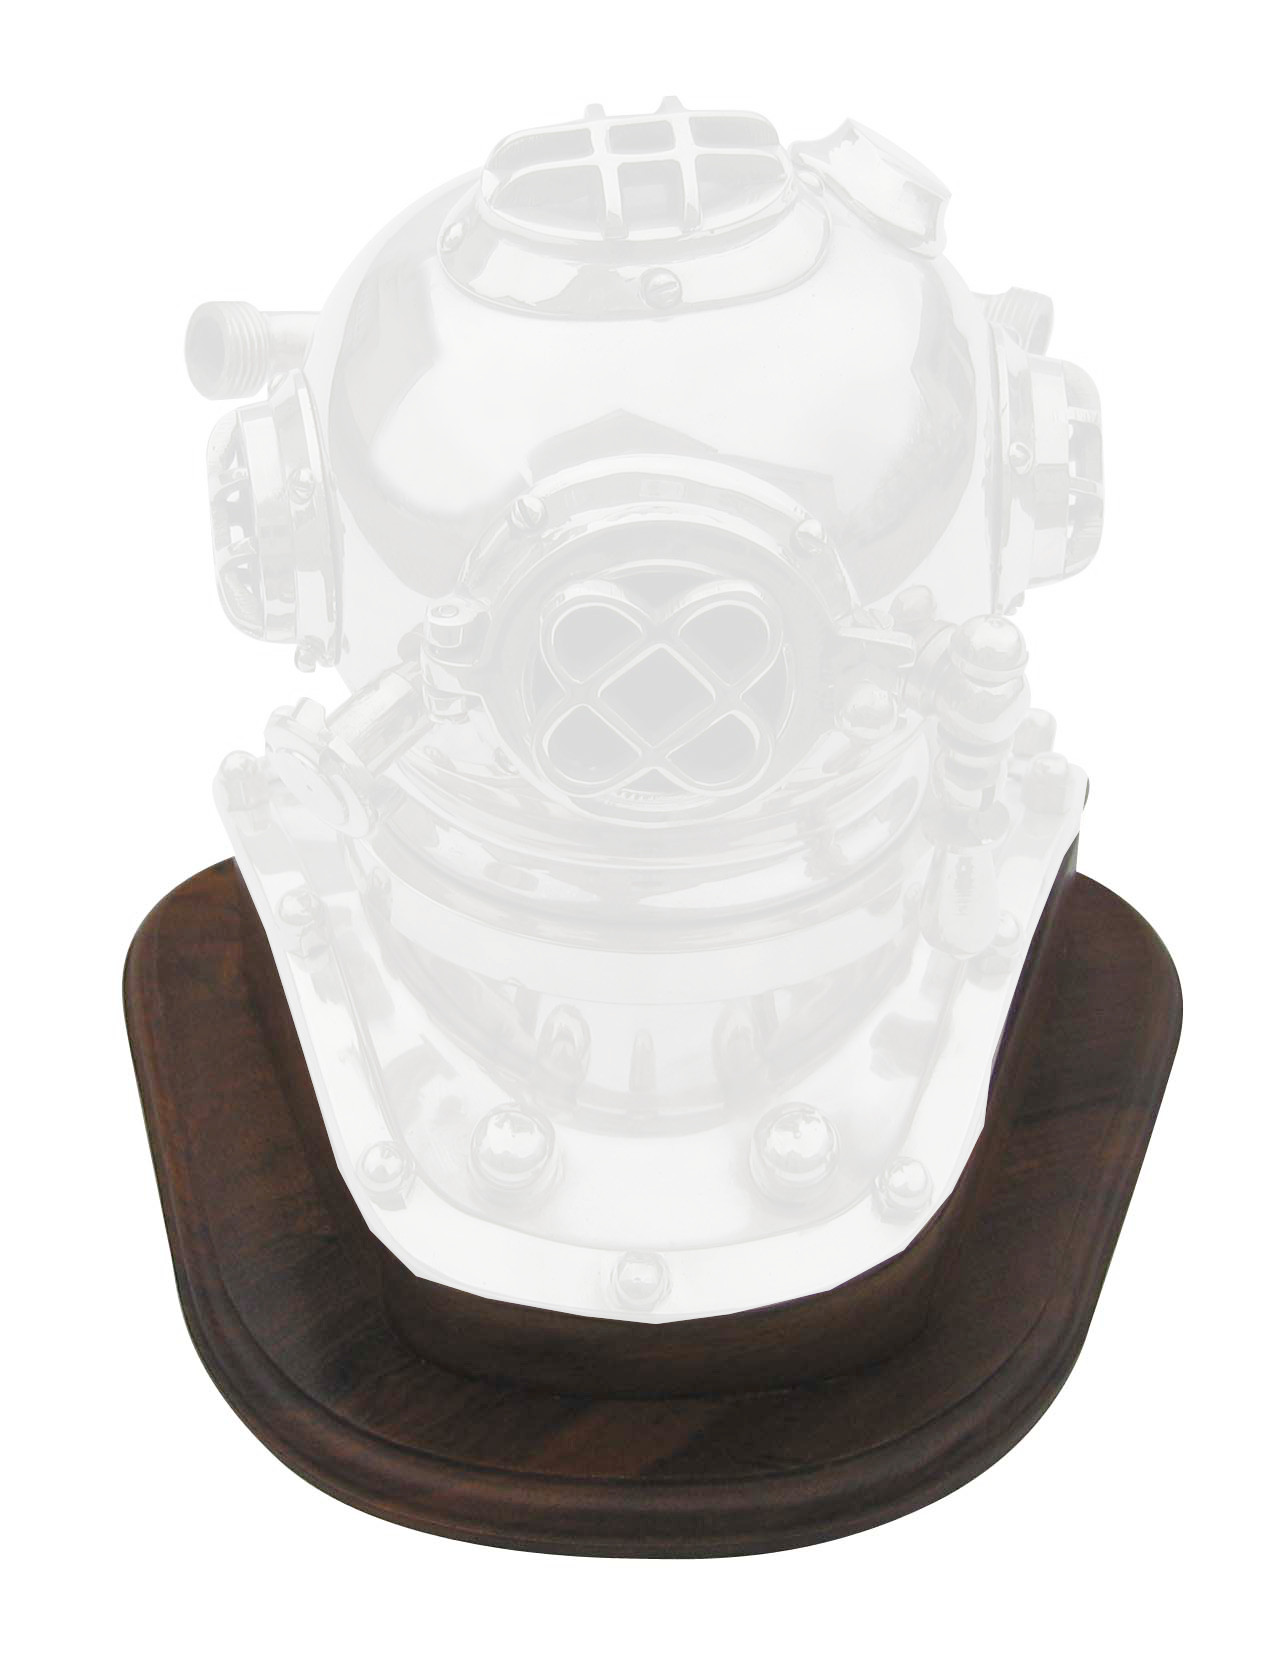 Socle en bois pour casque de scaphandrier référence CA-1173 - décoration marine